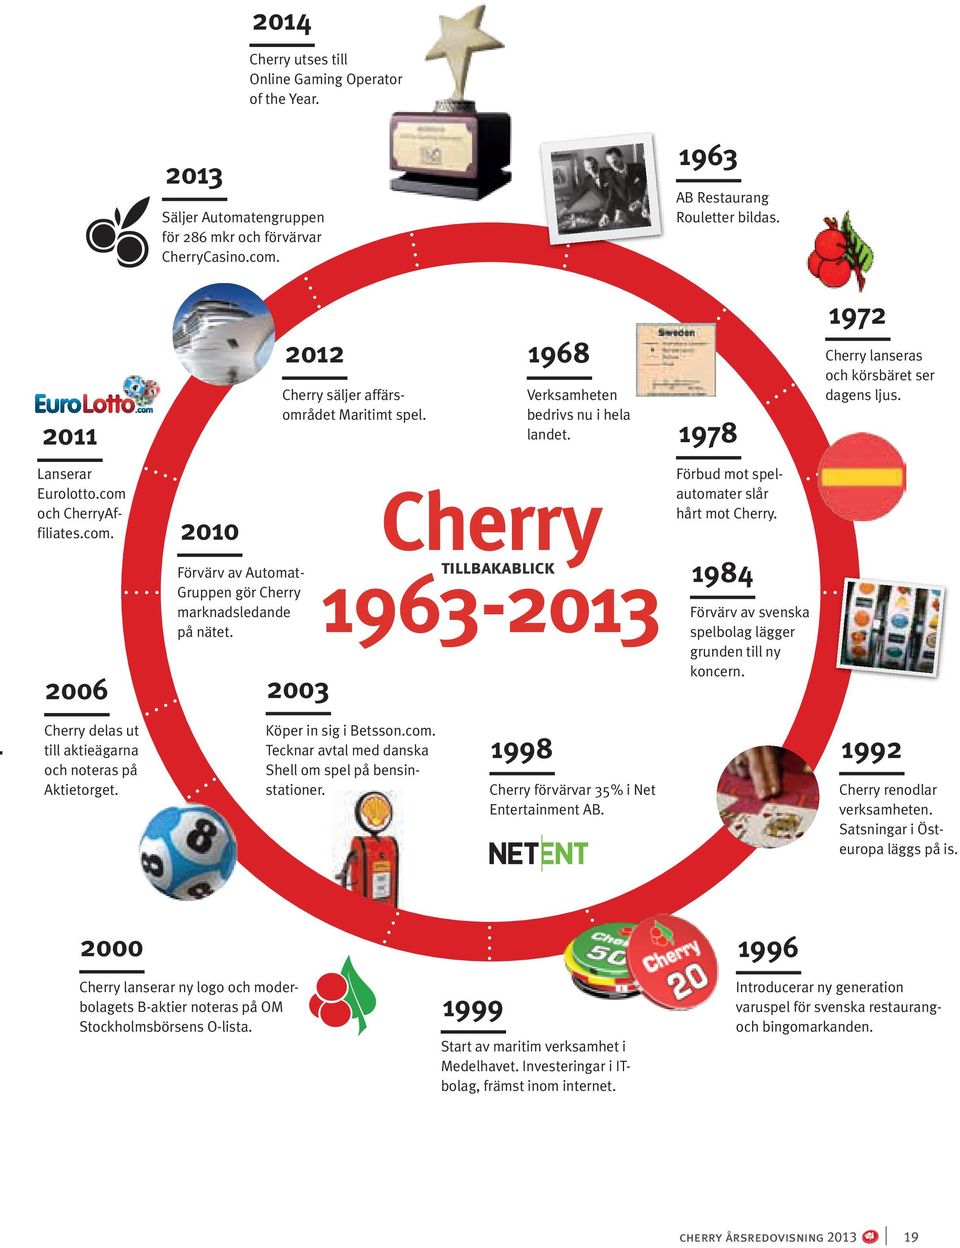 com. 2006 2010 Förvärv av Automat- Gruppen gör Cherry marknadsledande på nätet. 2003 Cherry 1963-2013 tillbakablick Förbud mot spelautomater slår hårt mot Cherry.